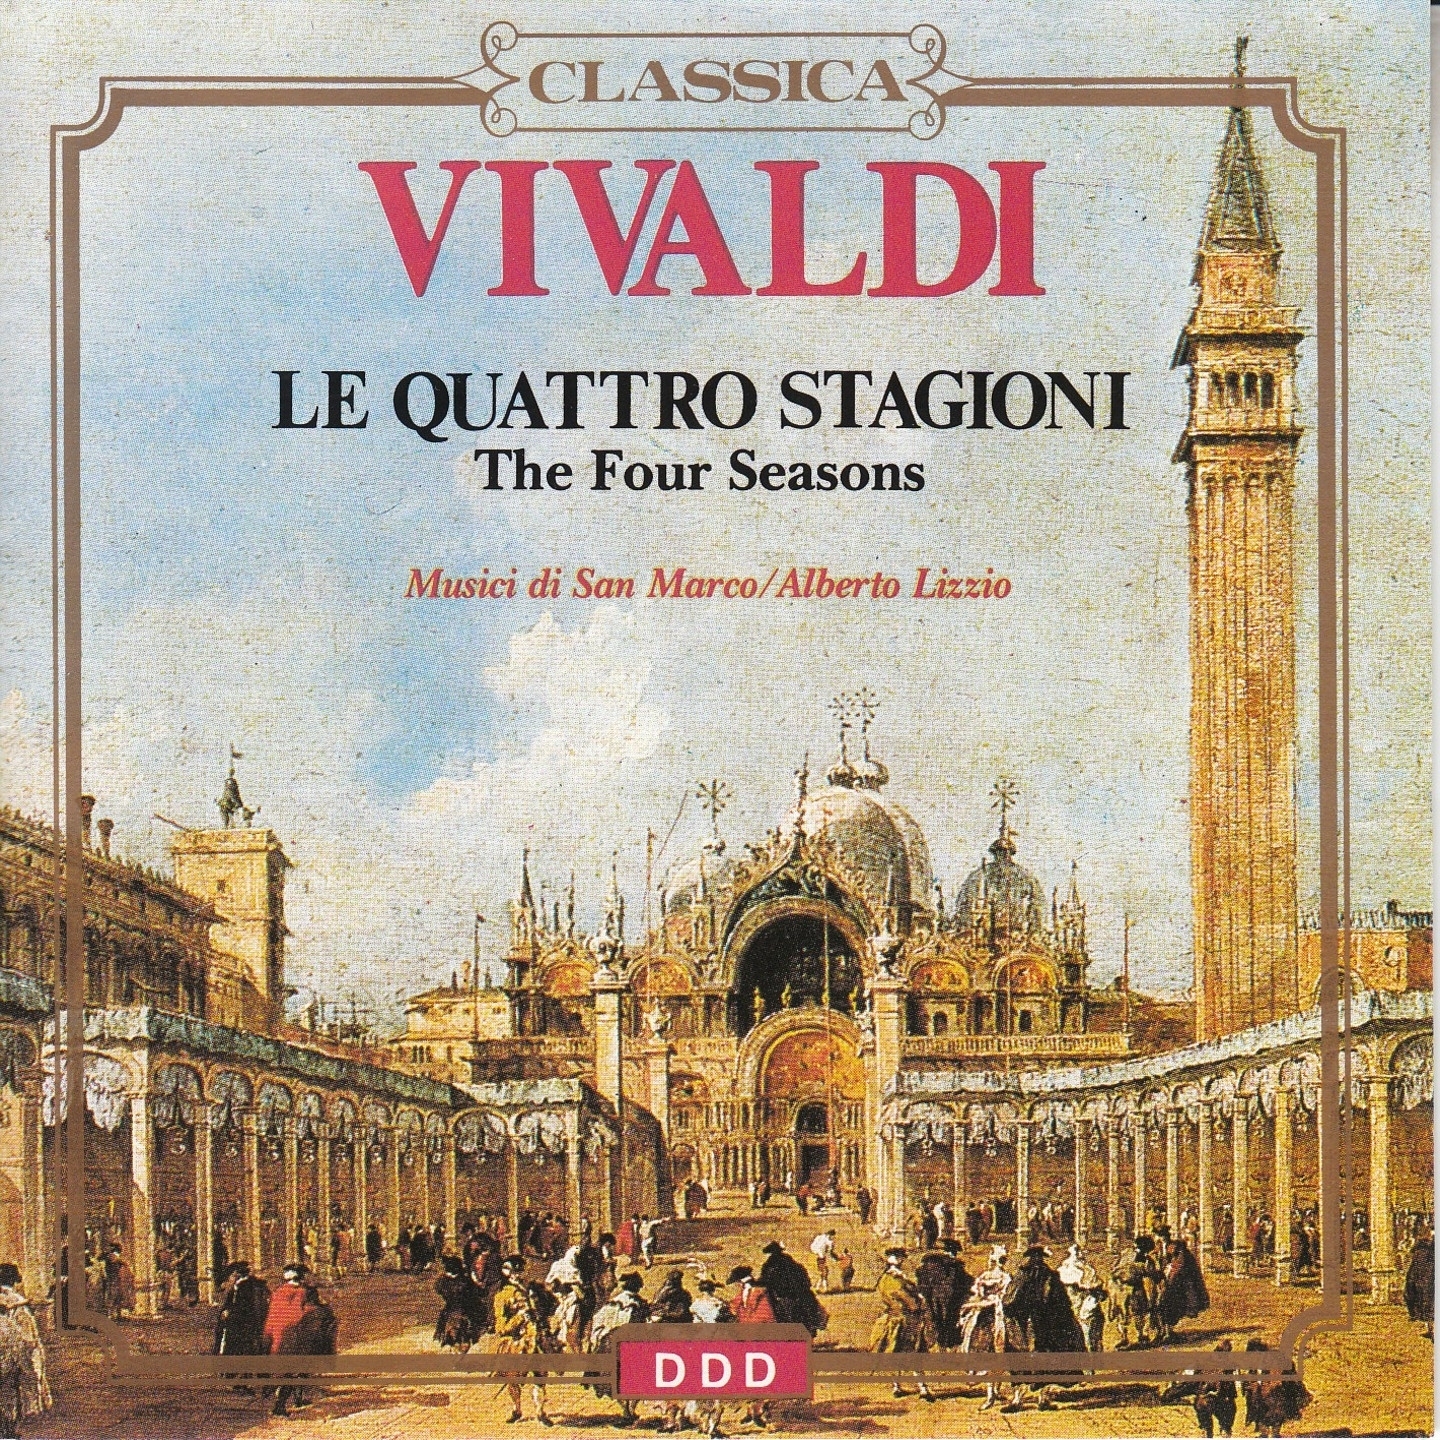 The Four Seasons, Violin Concerto No. 1 in E Major, RV 269 "La primavera": II. Andante